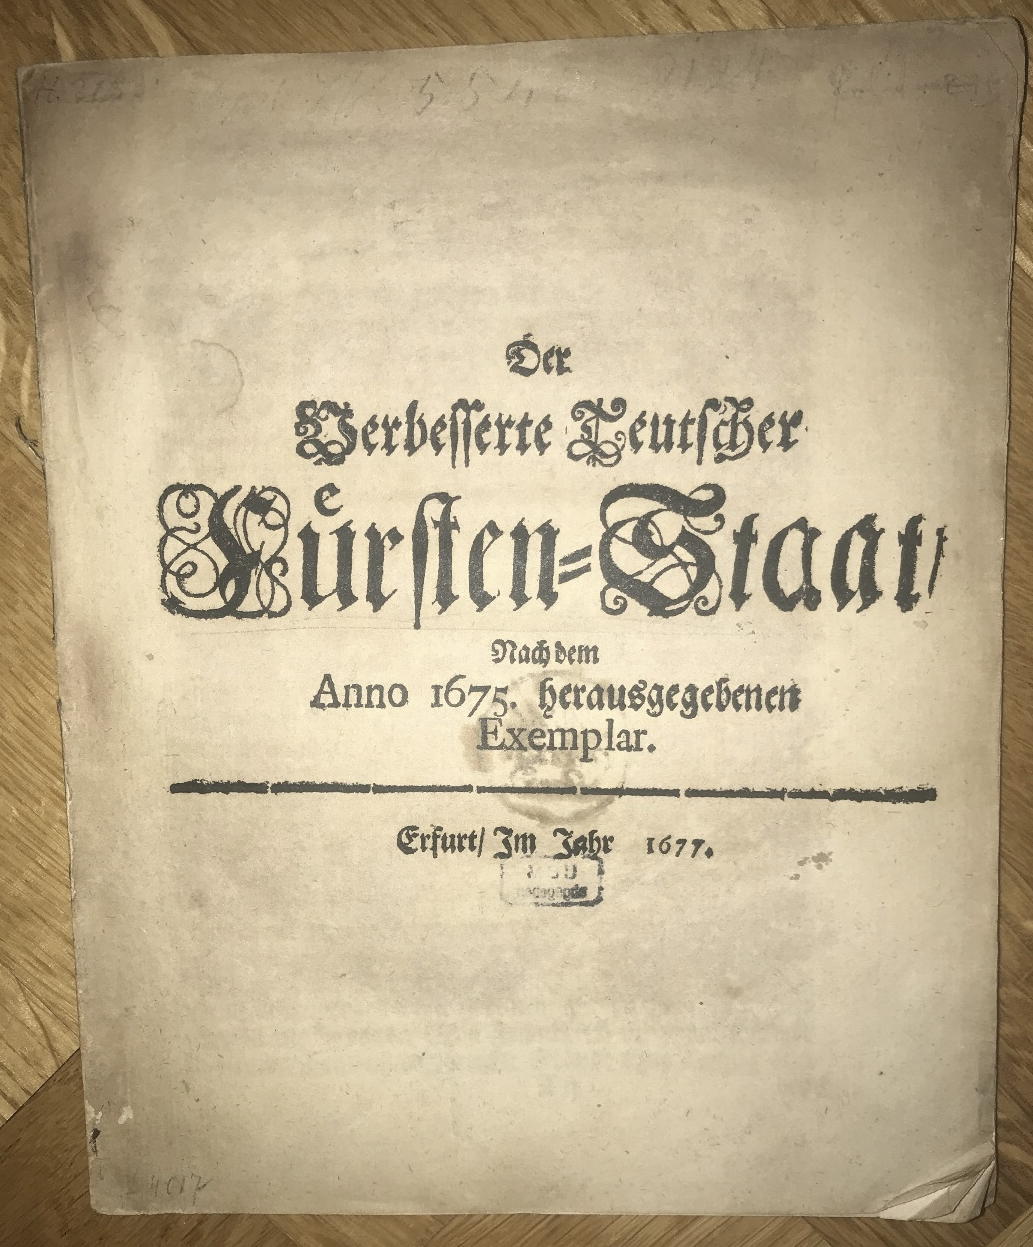  - Der Verbesserte Teutscher Frsten-Staat.  Nach dem Anno 1675. herausgegebenen Exemplar..